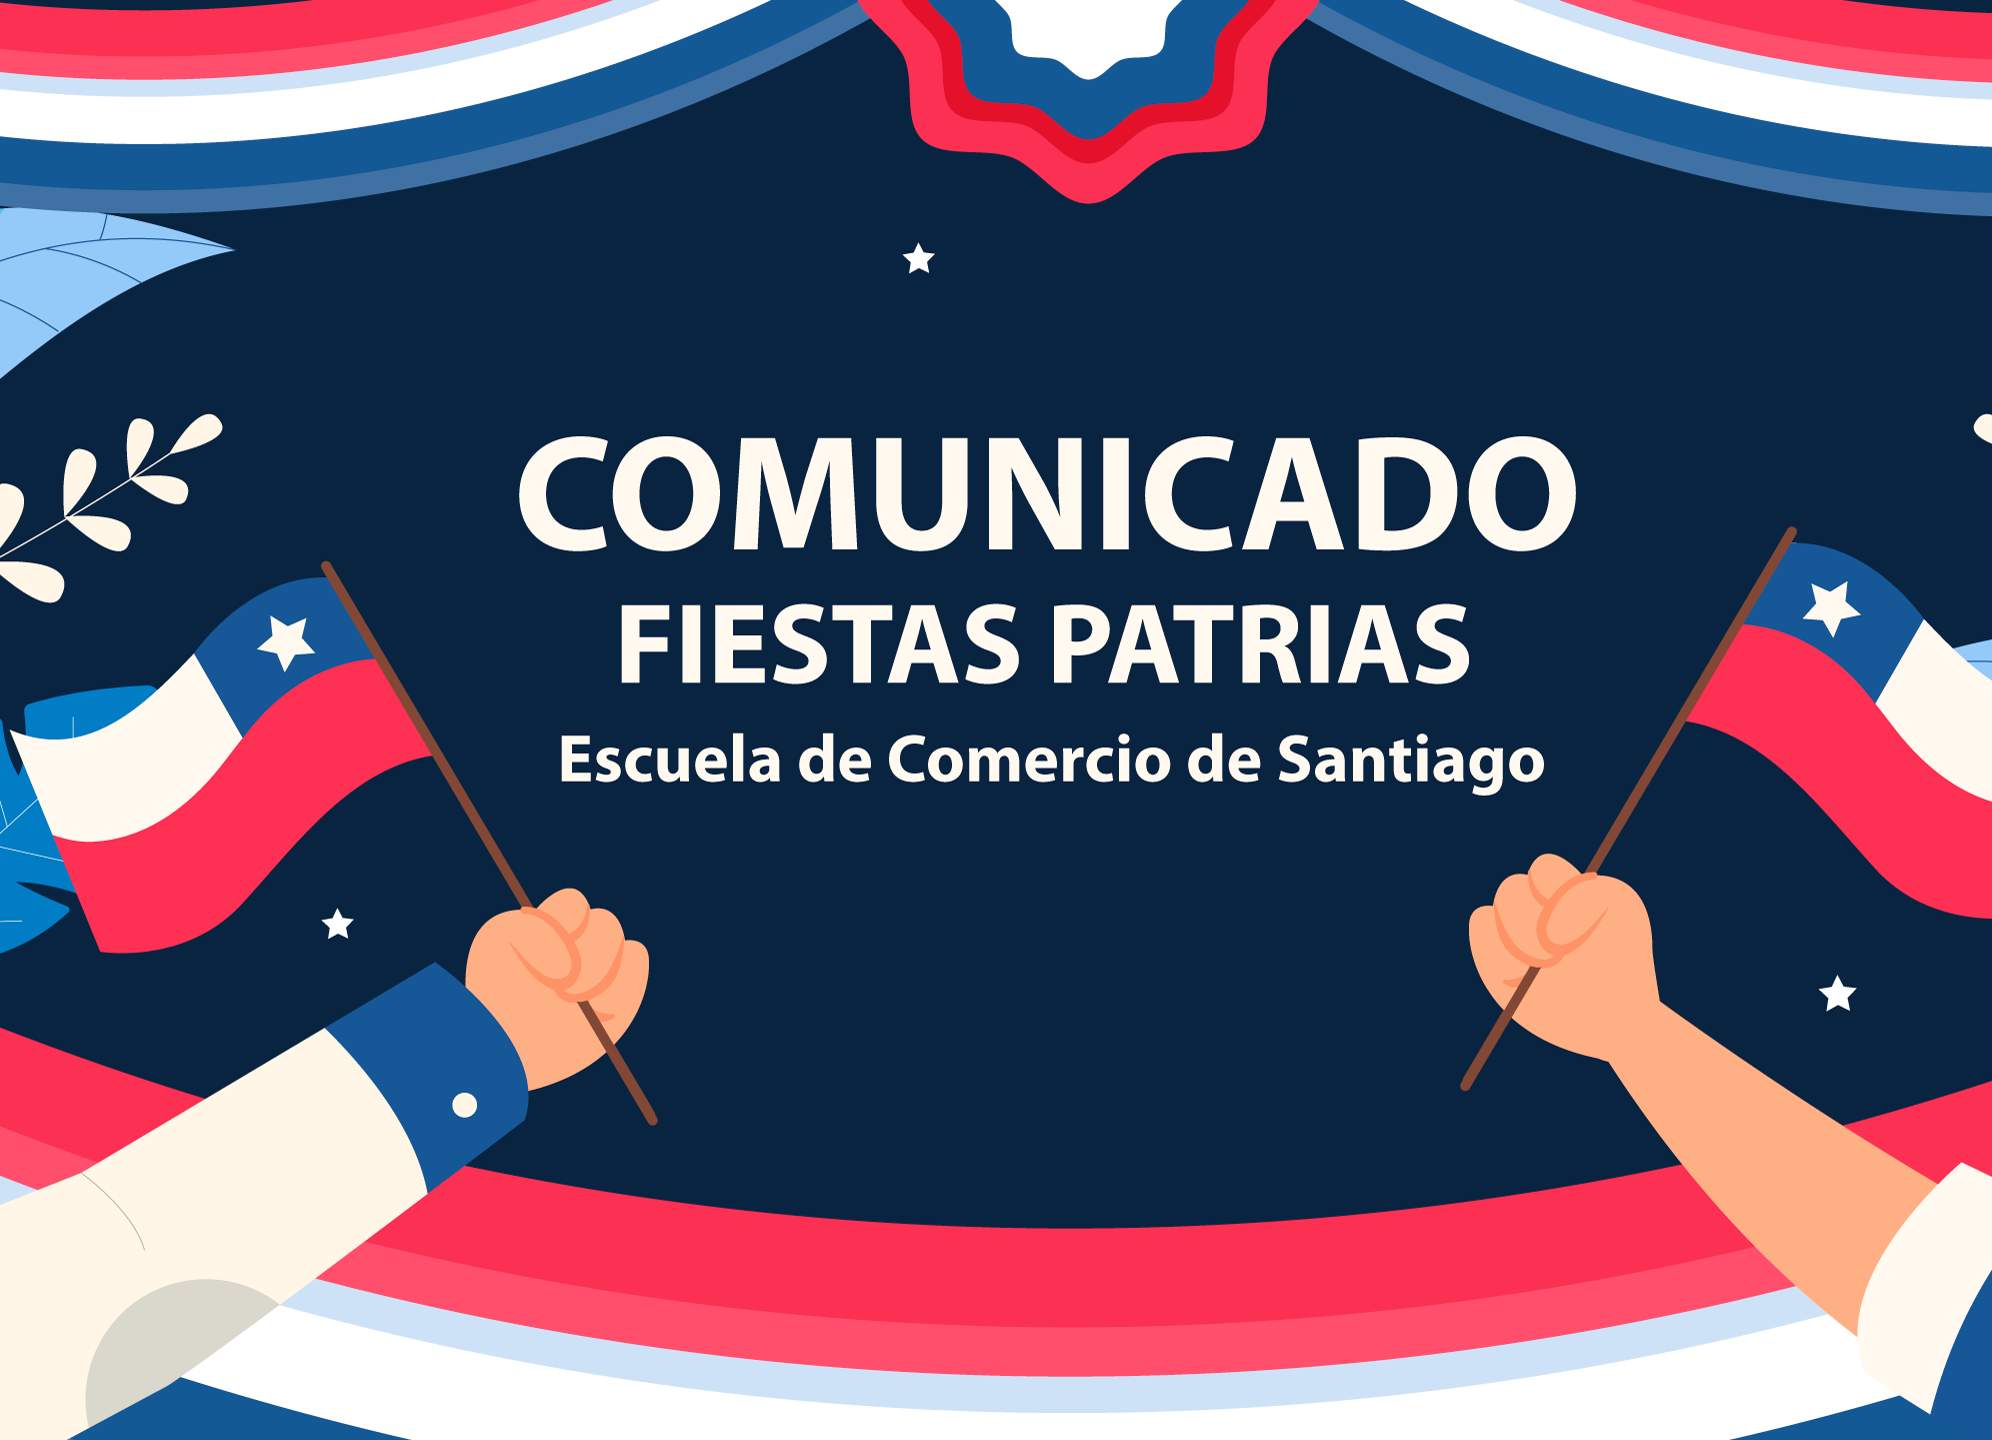 Escuela de Comercio - Comunicado Fiestas Patrias